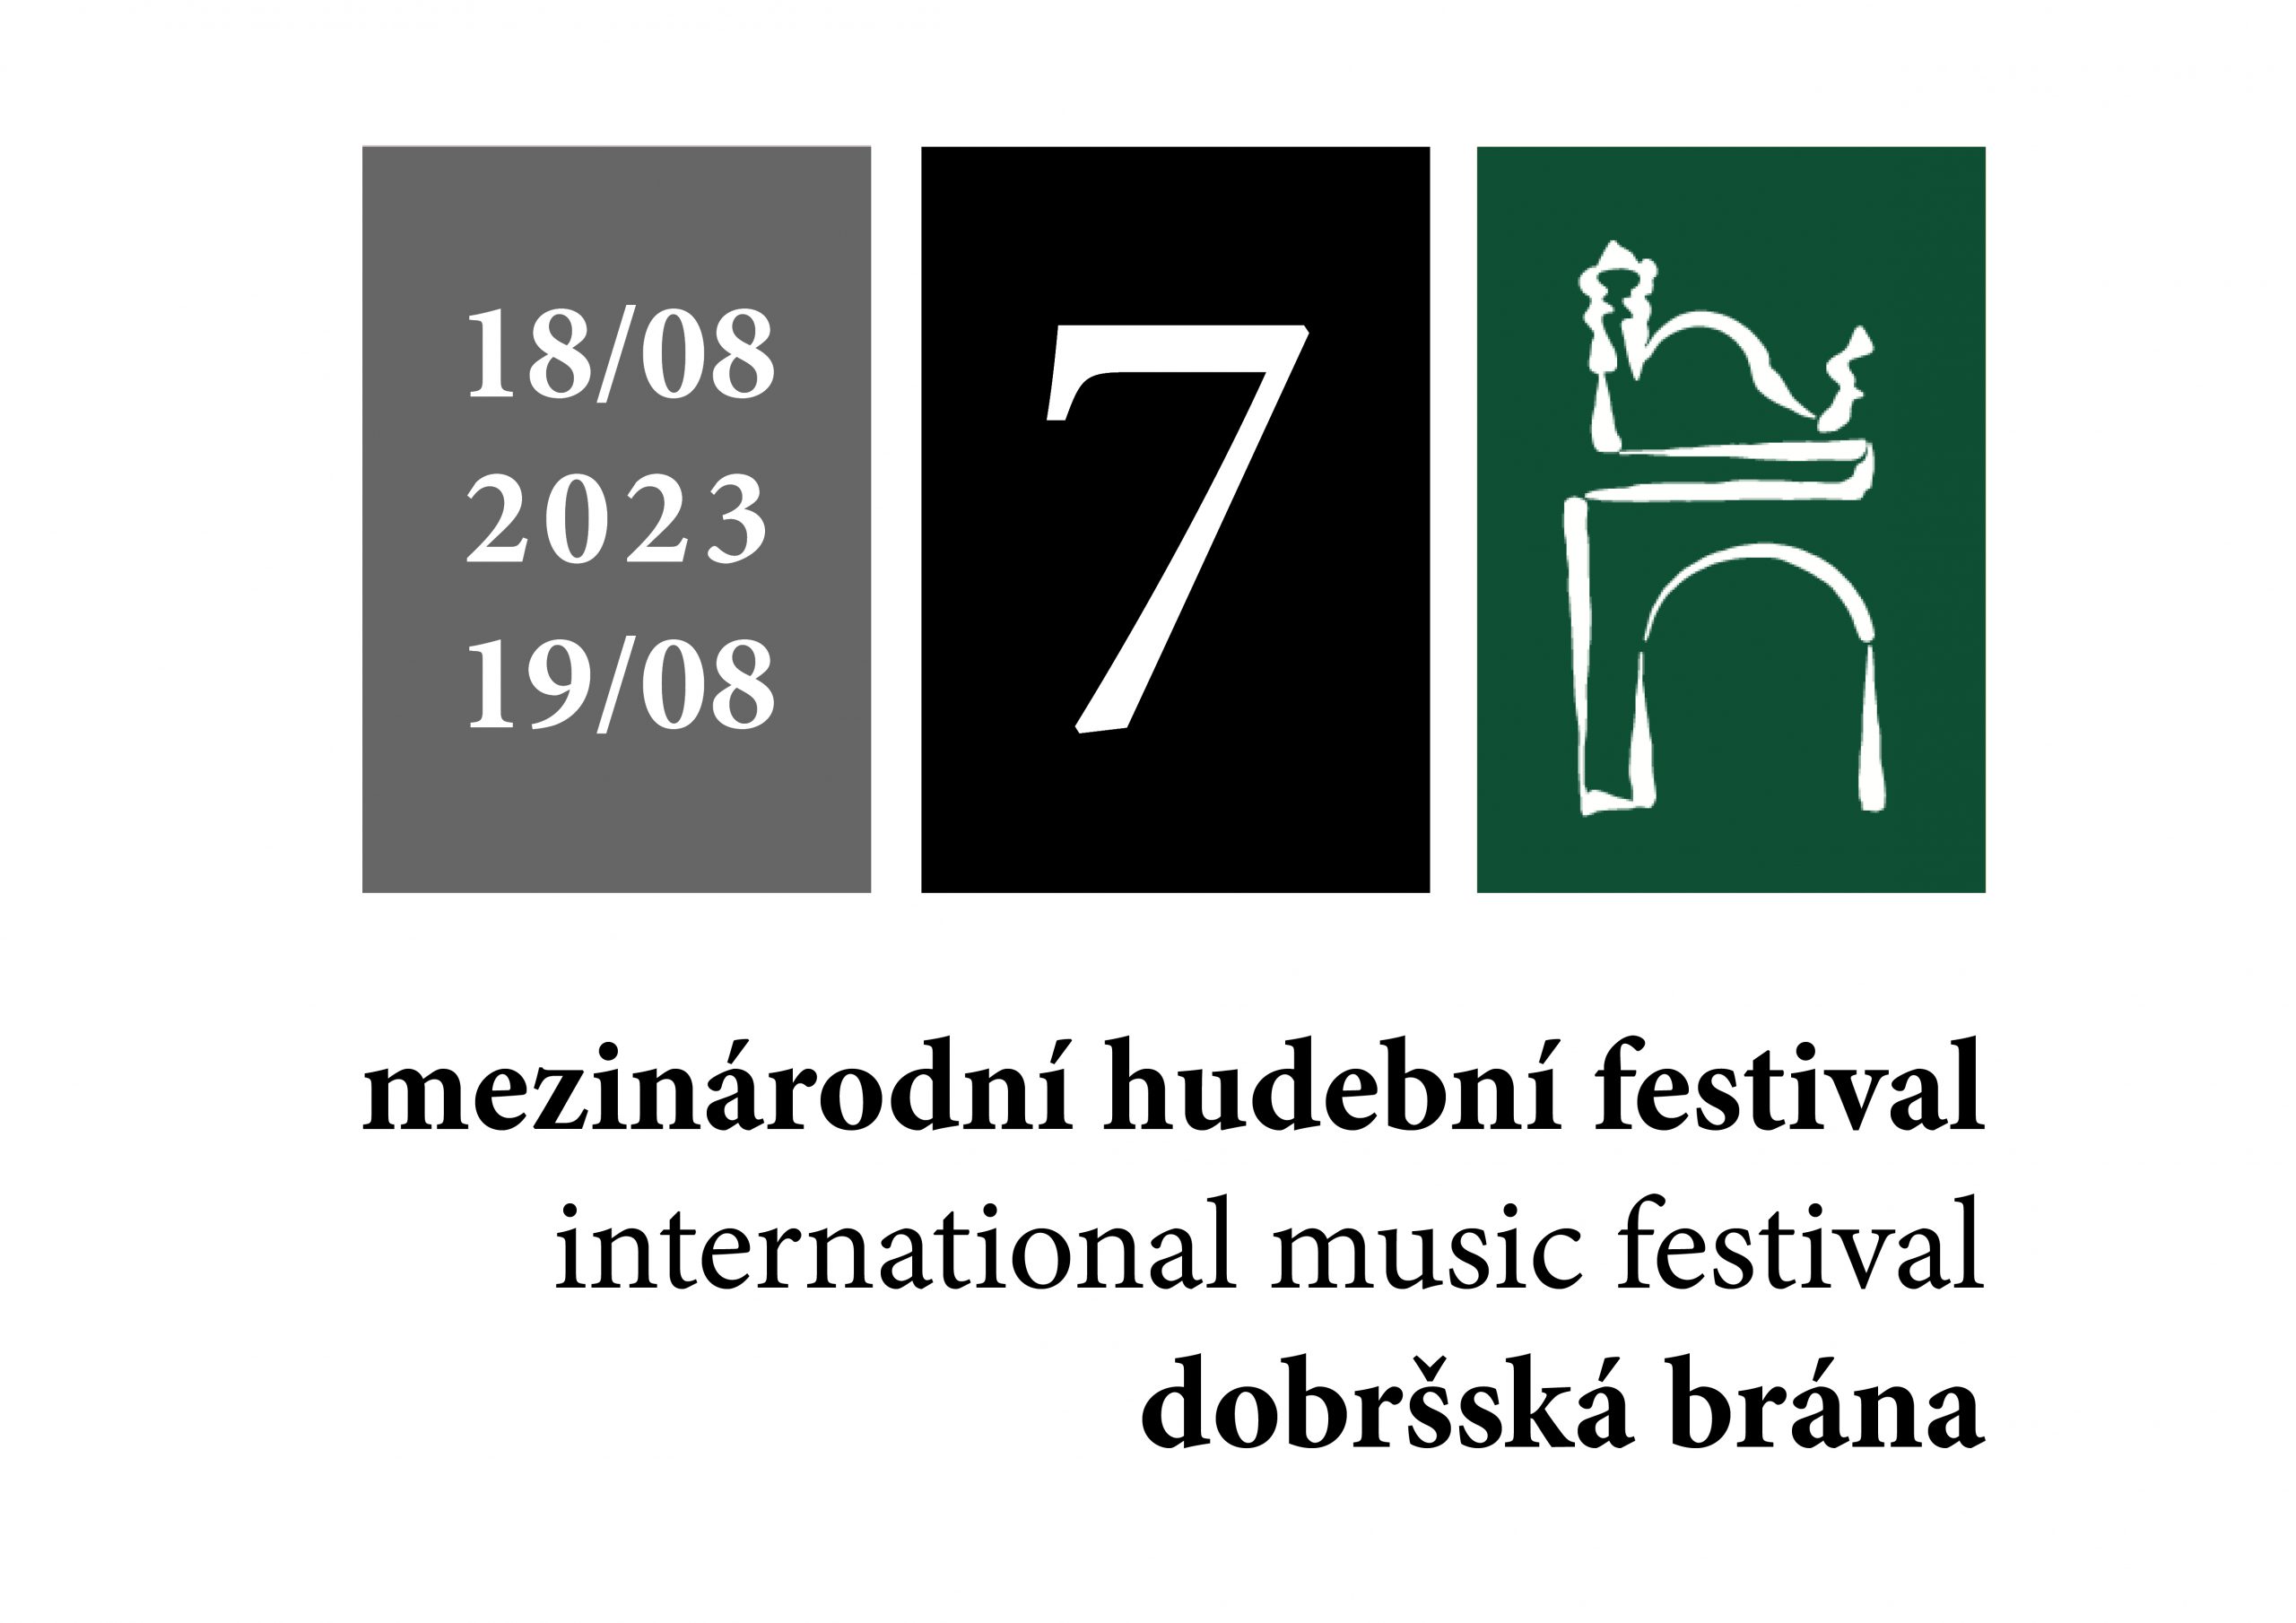 Festival Dobršská brána 2023